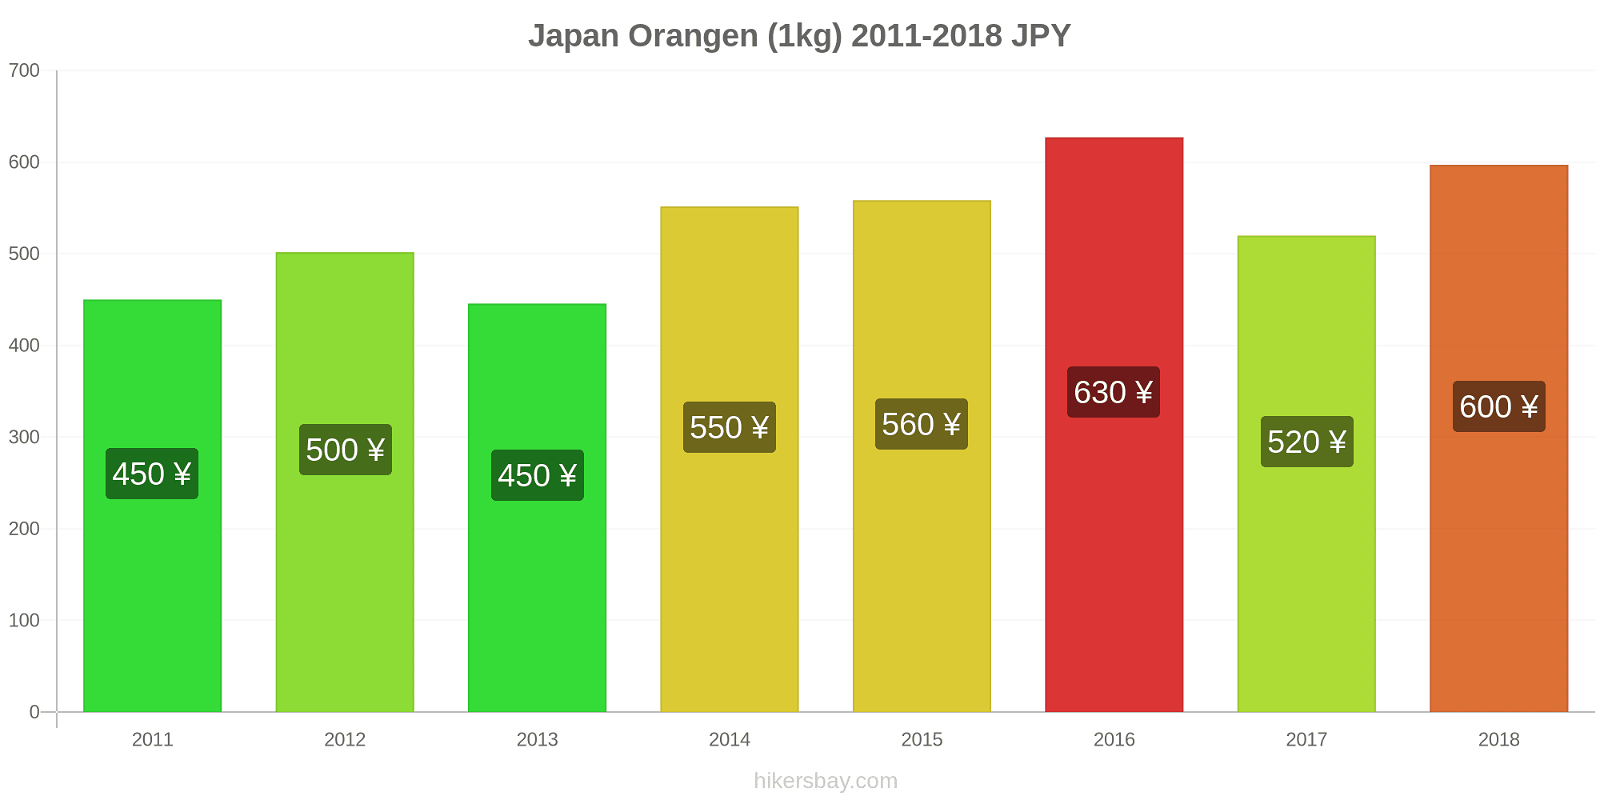 Japan Preisänderungen Orangen (1kg) hikersbay.com